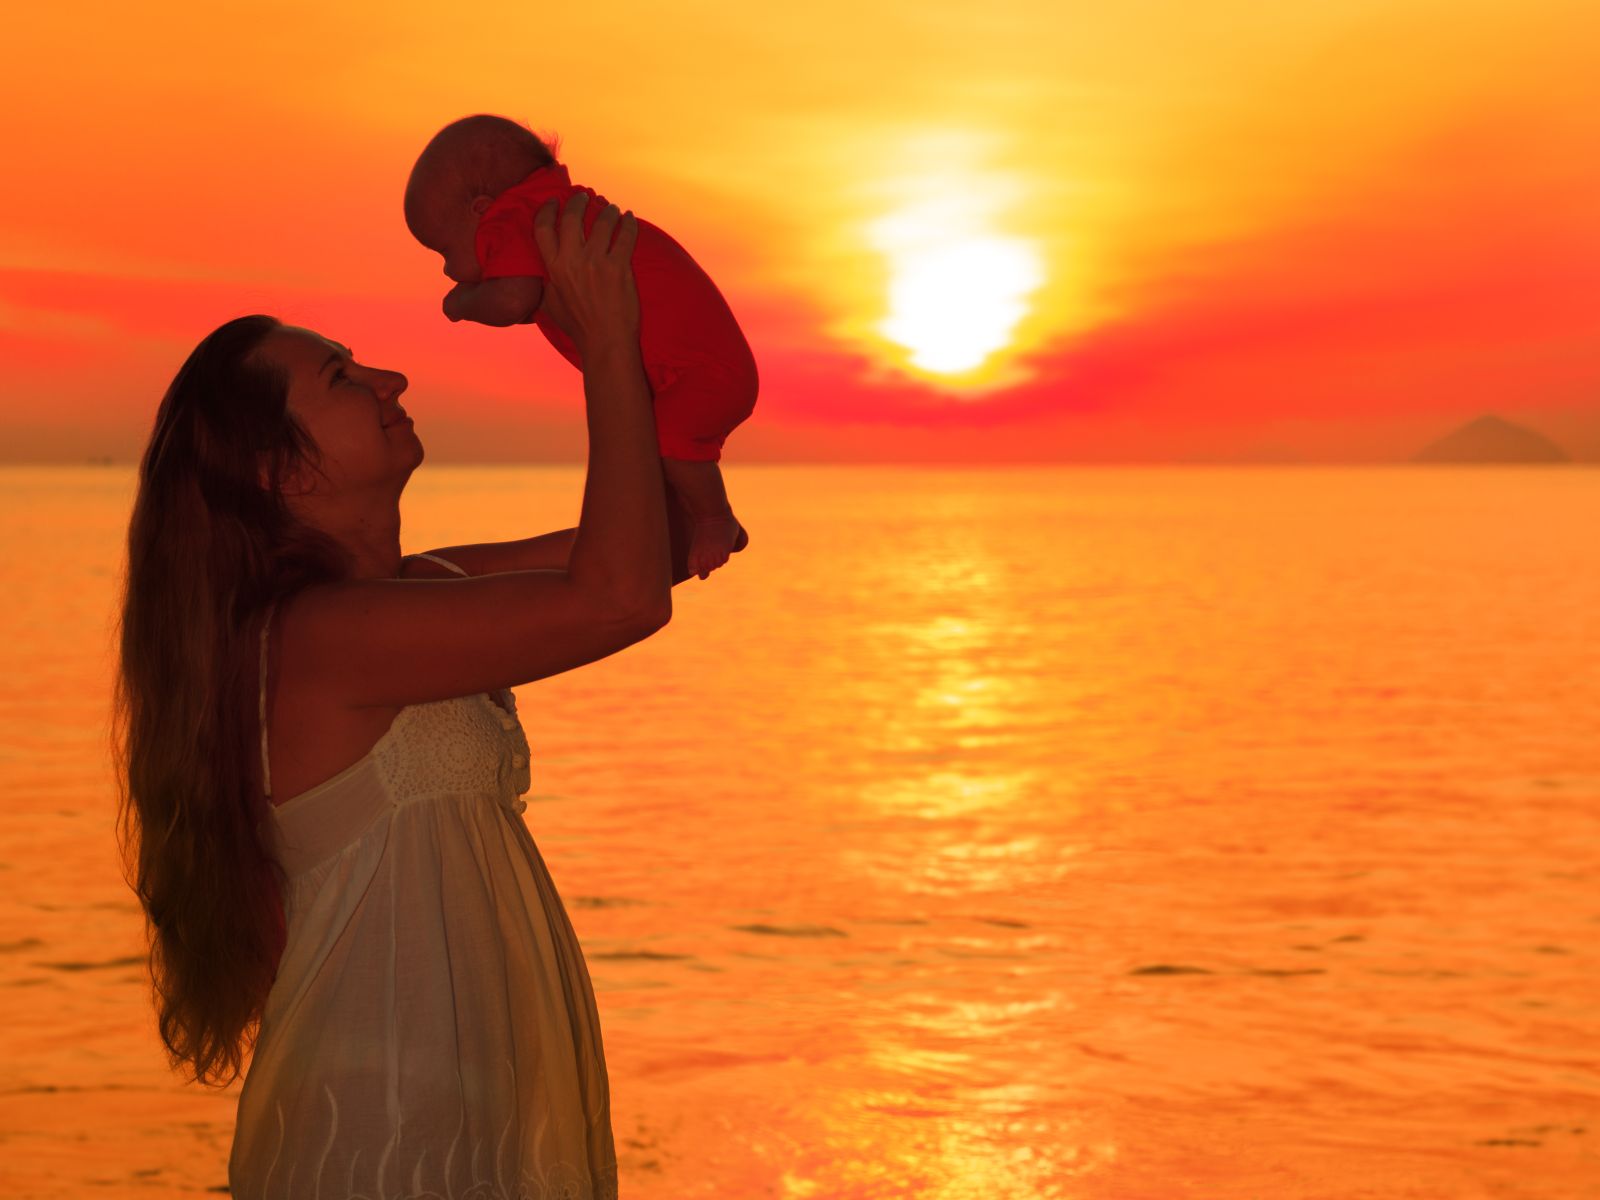 Silueta de mujer cargando un bebé con sus manos al fondo un amanecer naranja